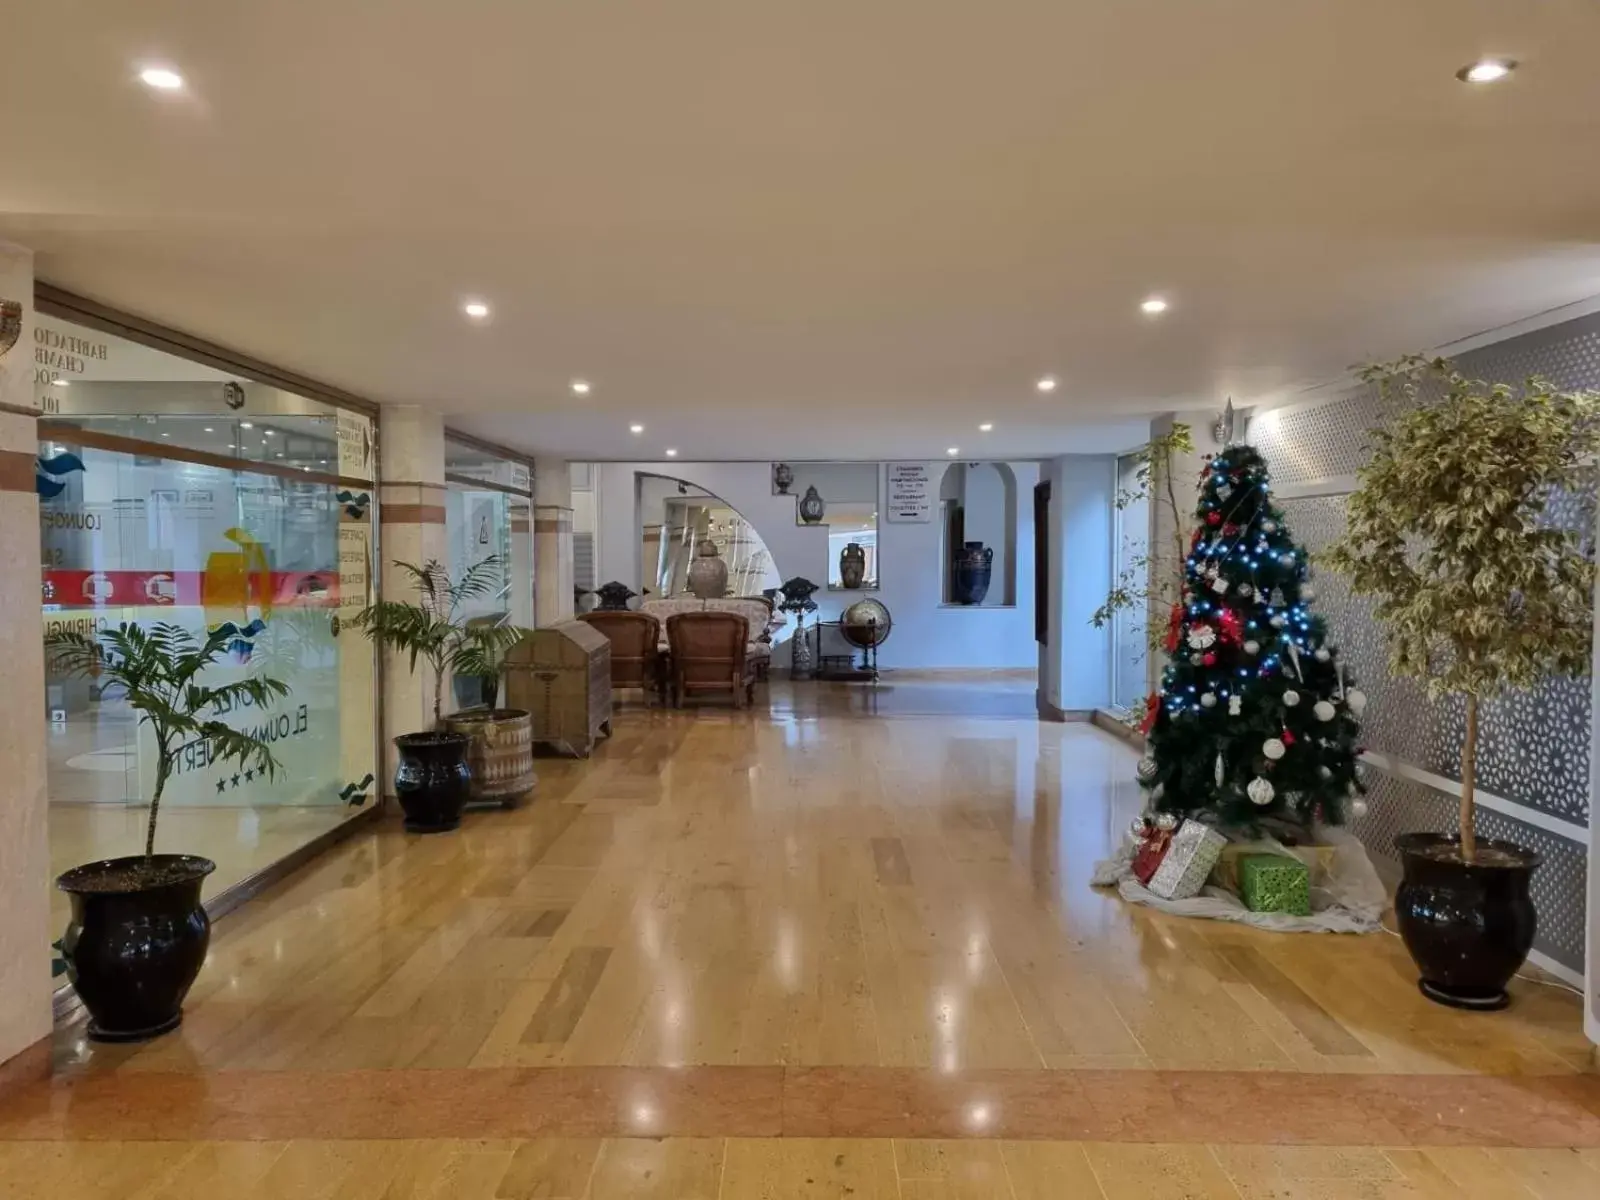 Lobby or reception, Lobby/Reception in El Oumnia Puerto & Spa